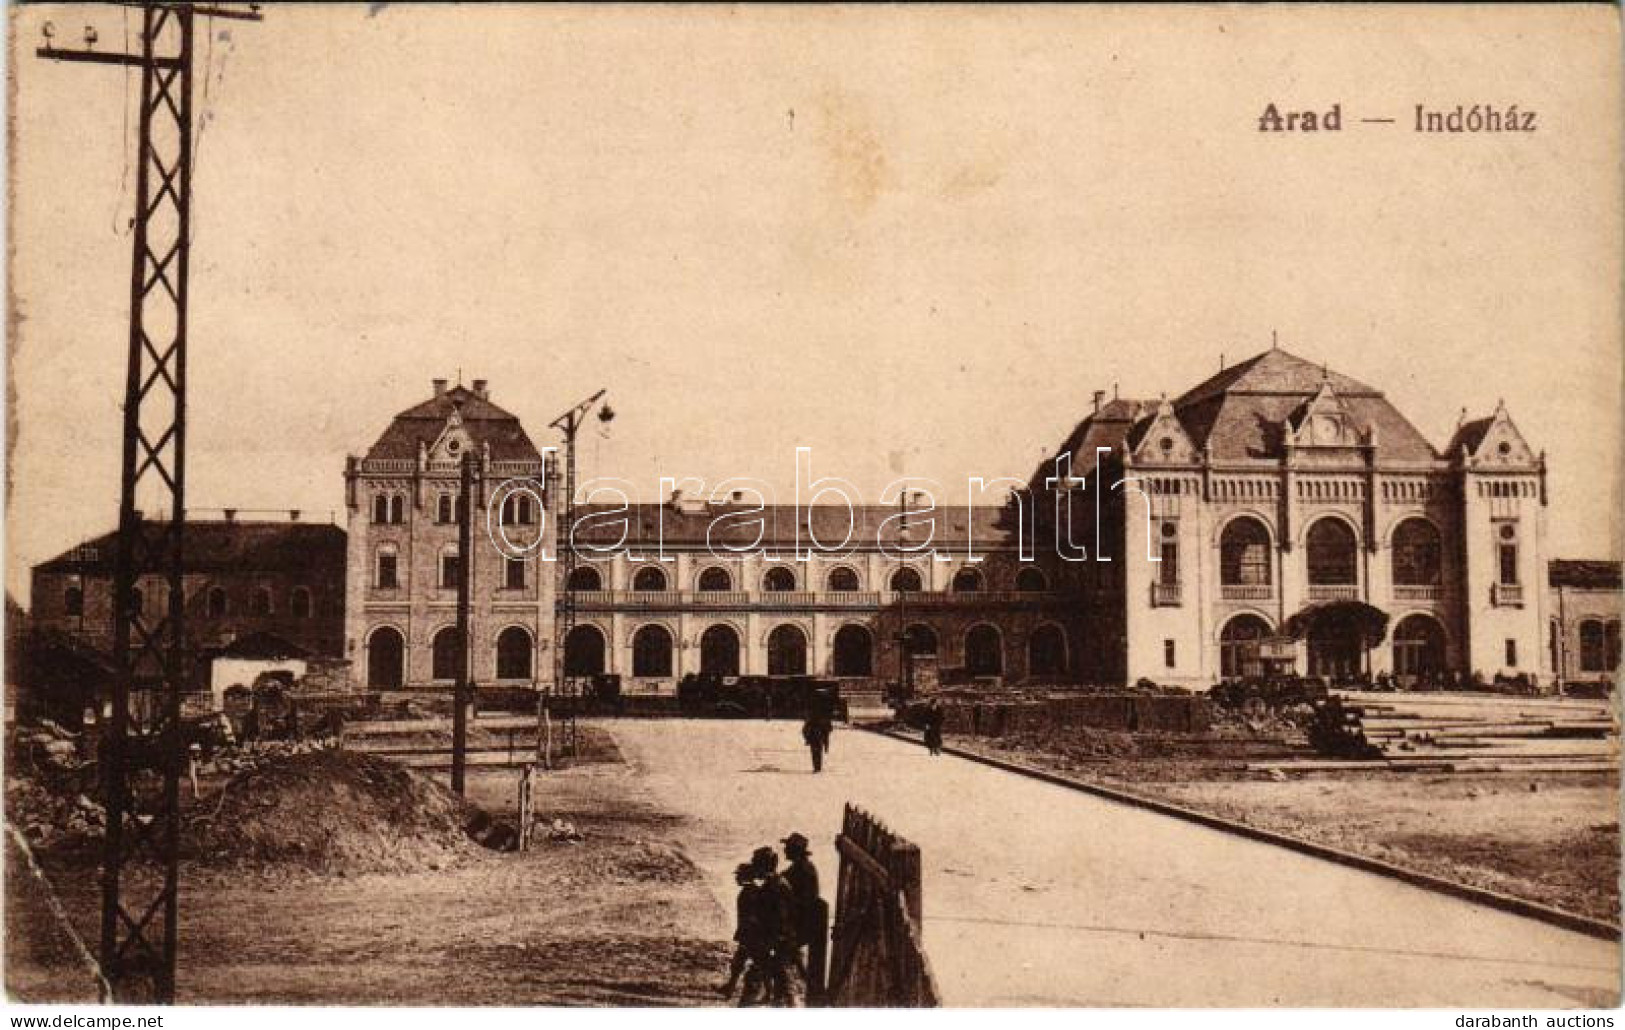 T2/T3 1918 Arad, Indóház, építkezés, Vasútállomás. Vasúti Levelezőlapárusítás 4805. / Railway Station, Construction (EK) - Unclassified